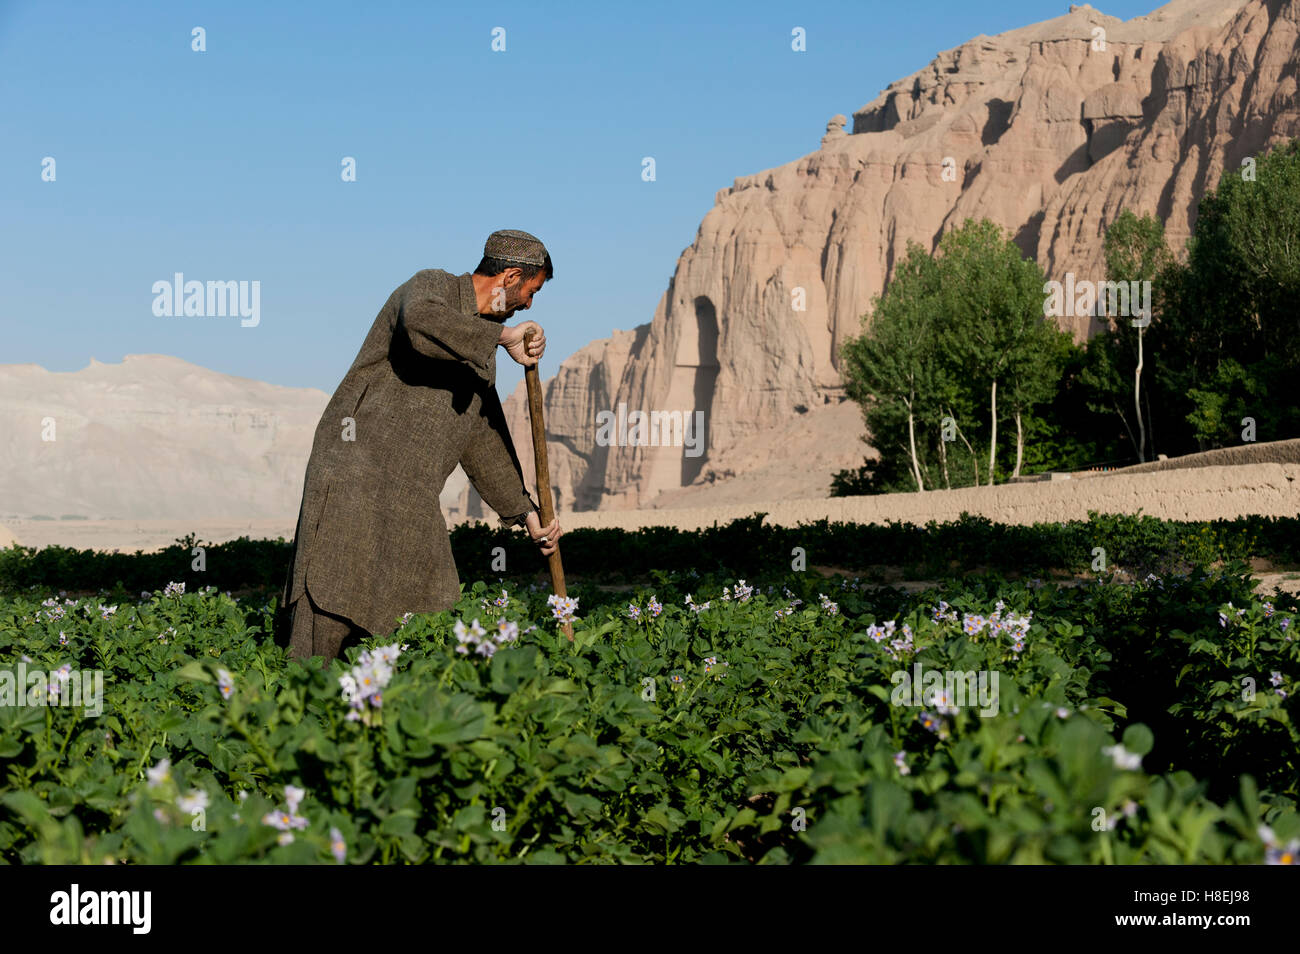 Ein Fame arbeitet in Kartoffelfeldern mit den alten Buddha-Nischen sichtbar in der Ferne in Bamiyan Provinz, Afghanistan, Asien Stockfoto